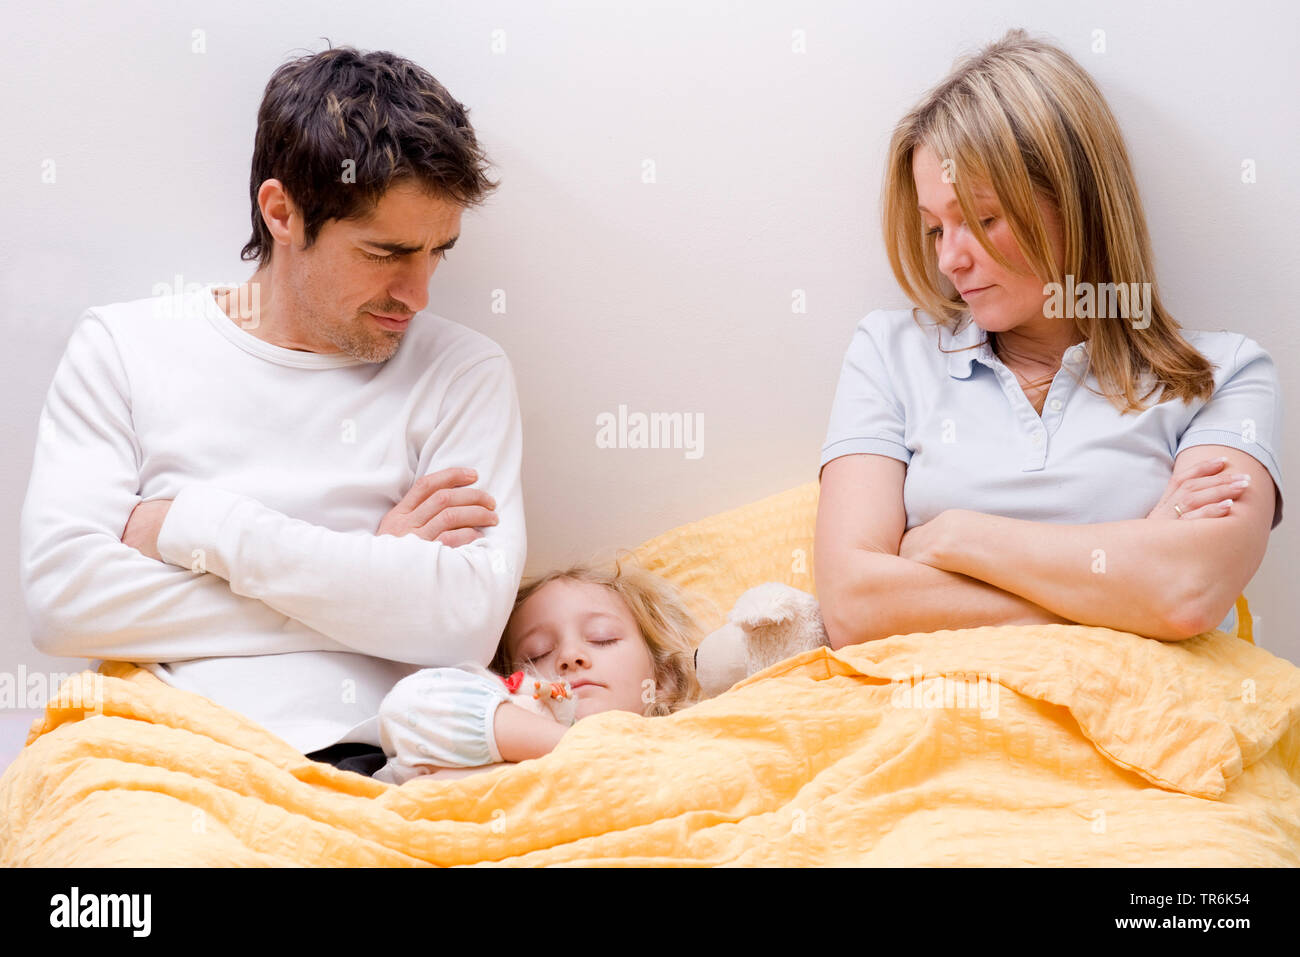 daughter sleeping between parents in bed Stock Photo